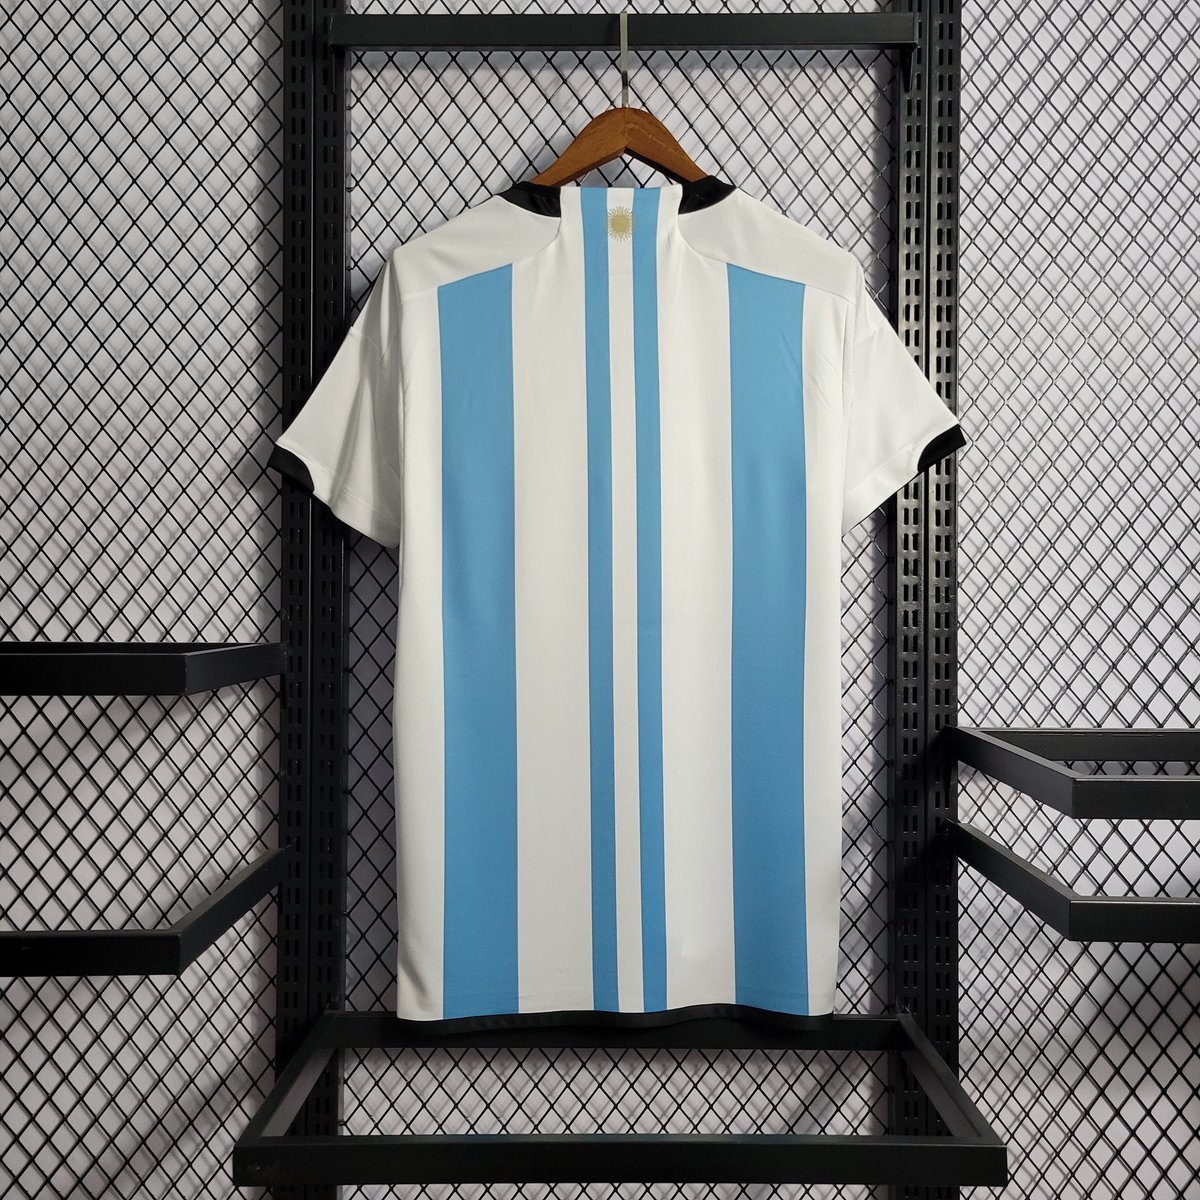 Essa camisa da Argentina é espetacular! 😍